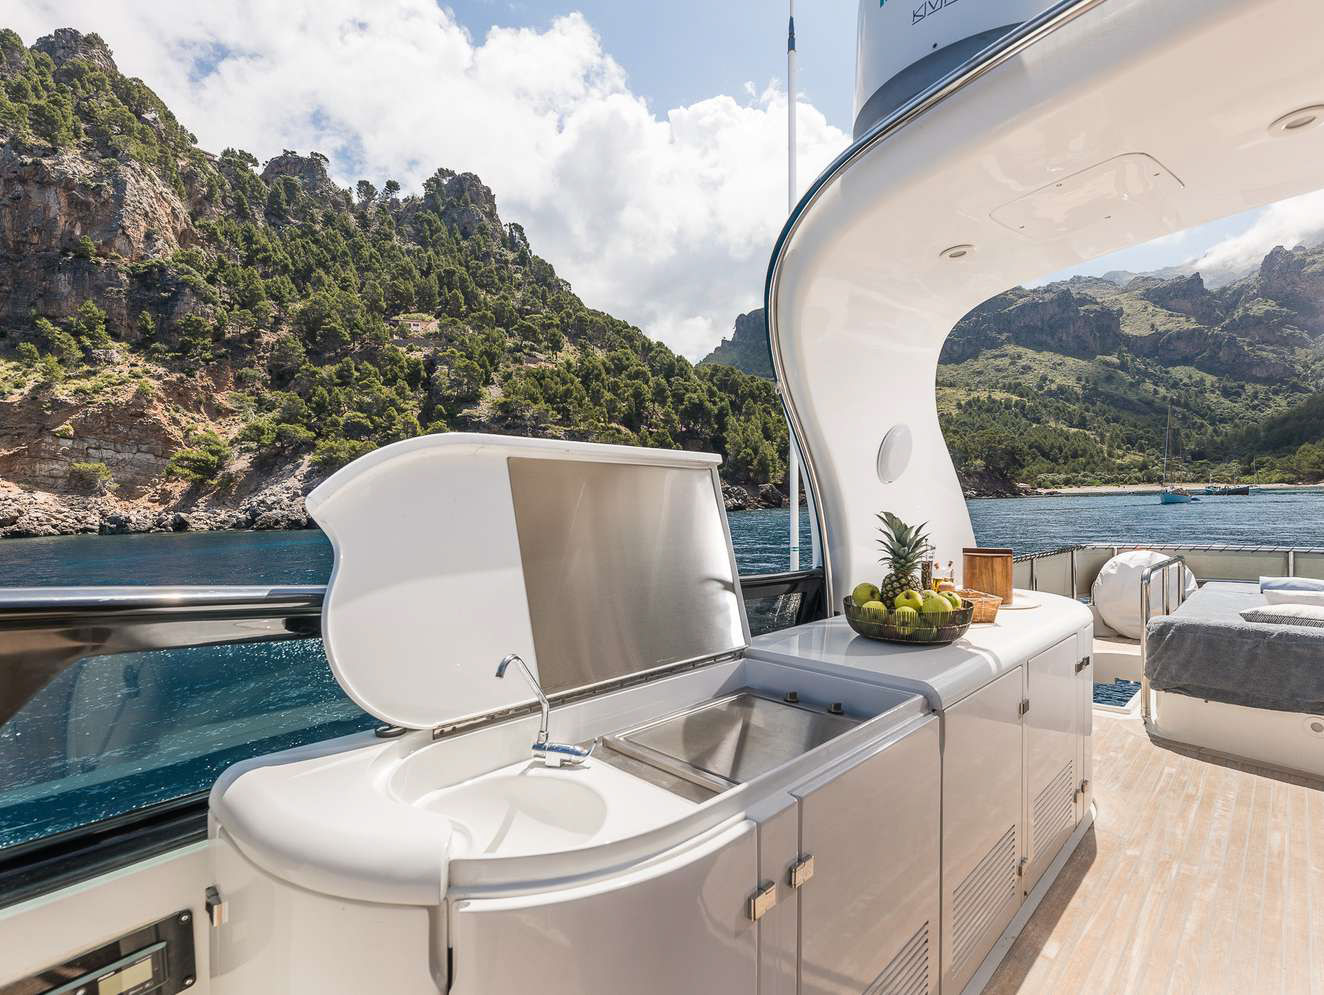 Yate de casi 30 metros para unas vacaciones de verdadero lujo en barco en Ibiza.